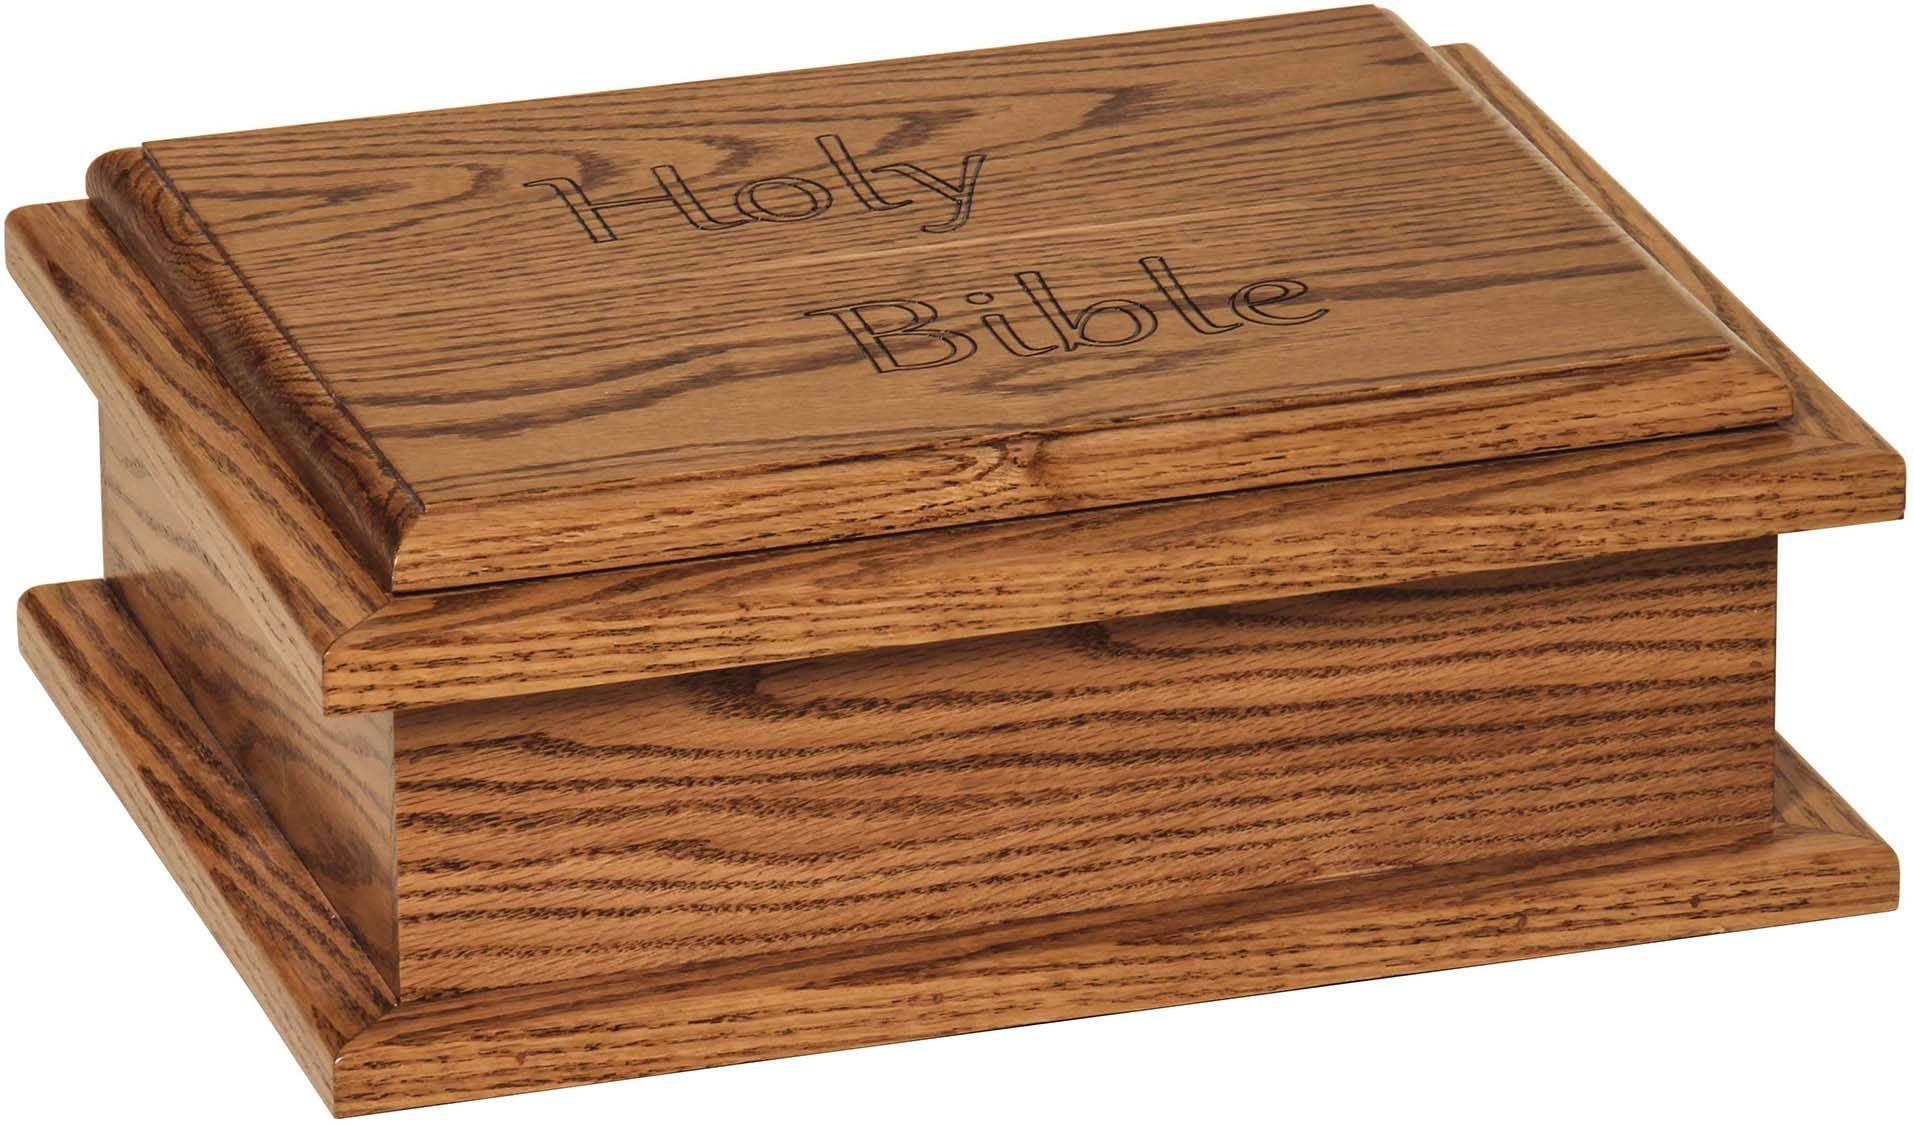 Bible Boxes